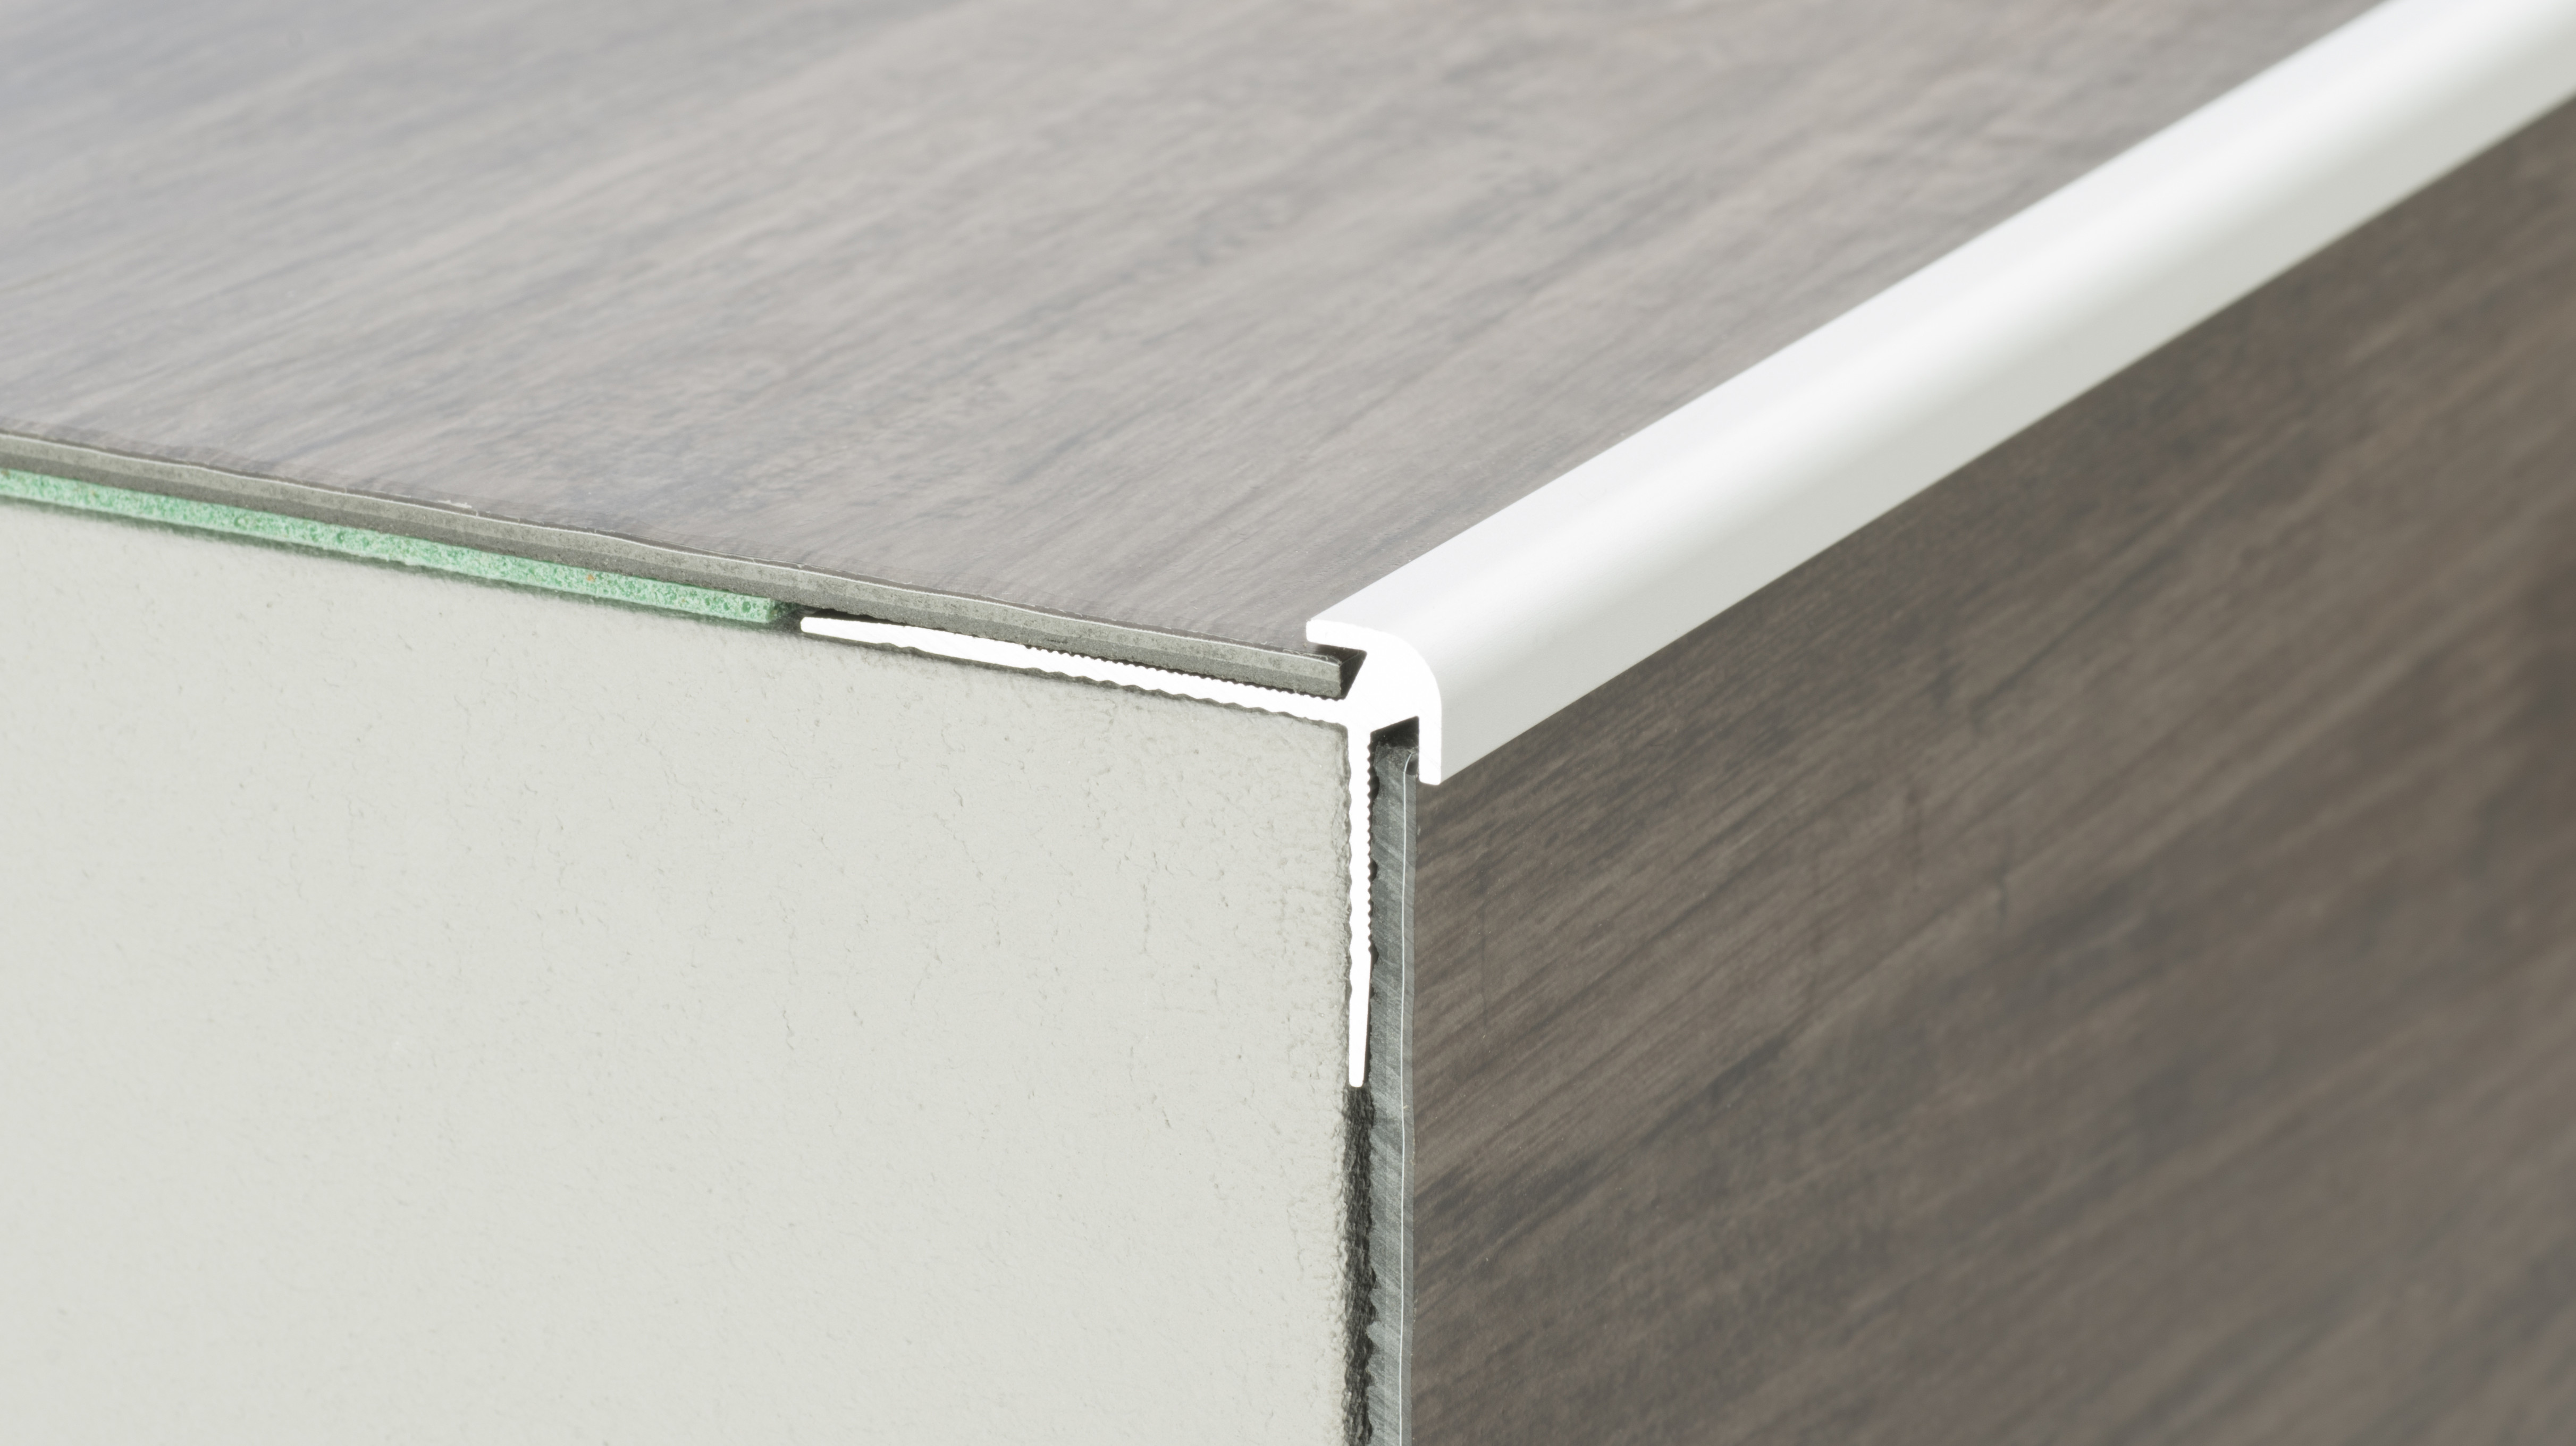 Für elastische Bodenbeläge wie Linoleum, LVT oder PVC eignen sich eher einteilige Profile.